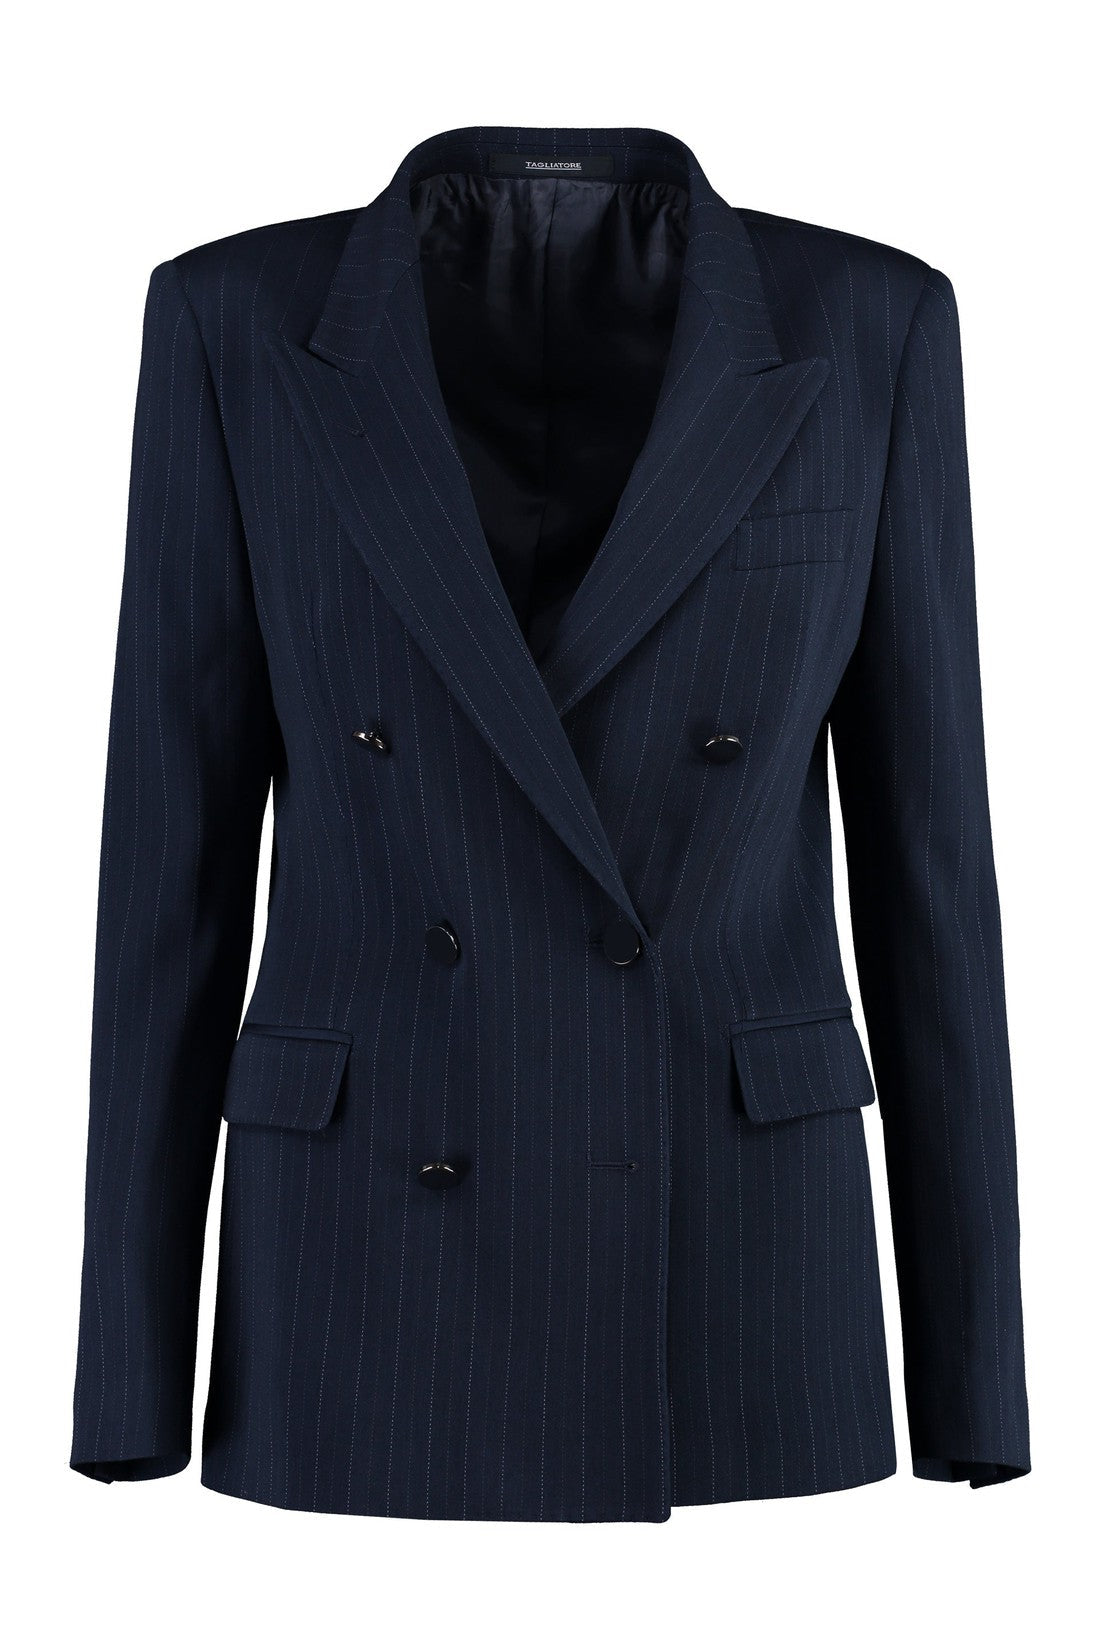 0205 Tagliatore-OUTLET-SALE-T-Parigi two-piece suit-ARCHIVIST